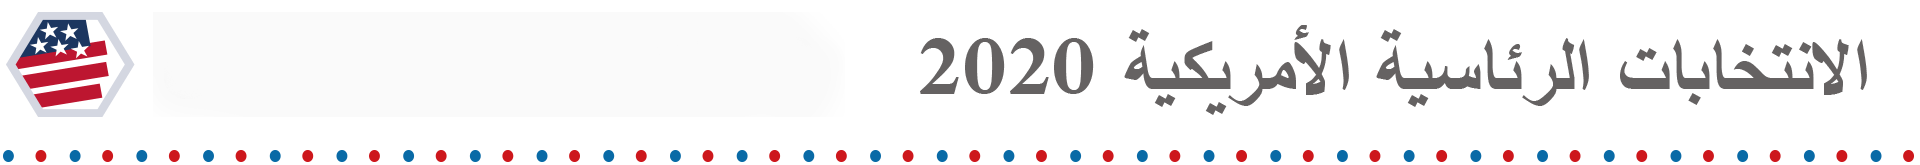 الانتخابات الأمريكية 2020 ما الذي يجب البحث عنه في ليلة الانتخابات الأمريكية Bbc News عربي